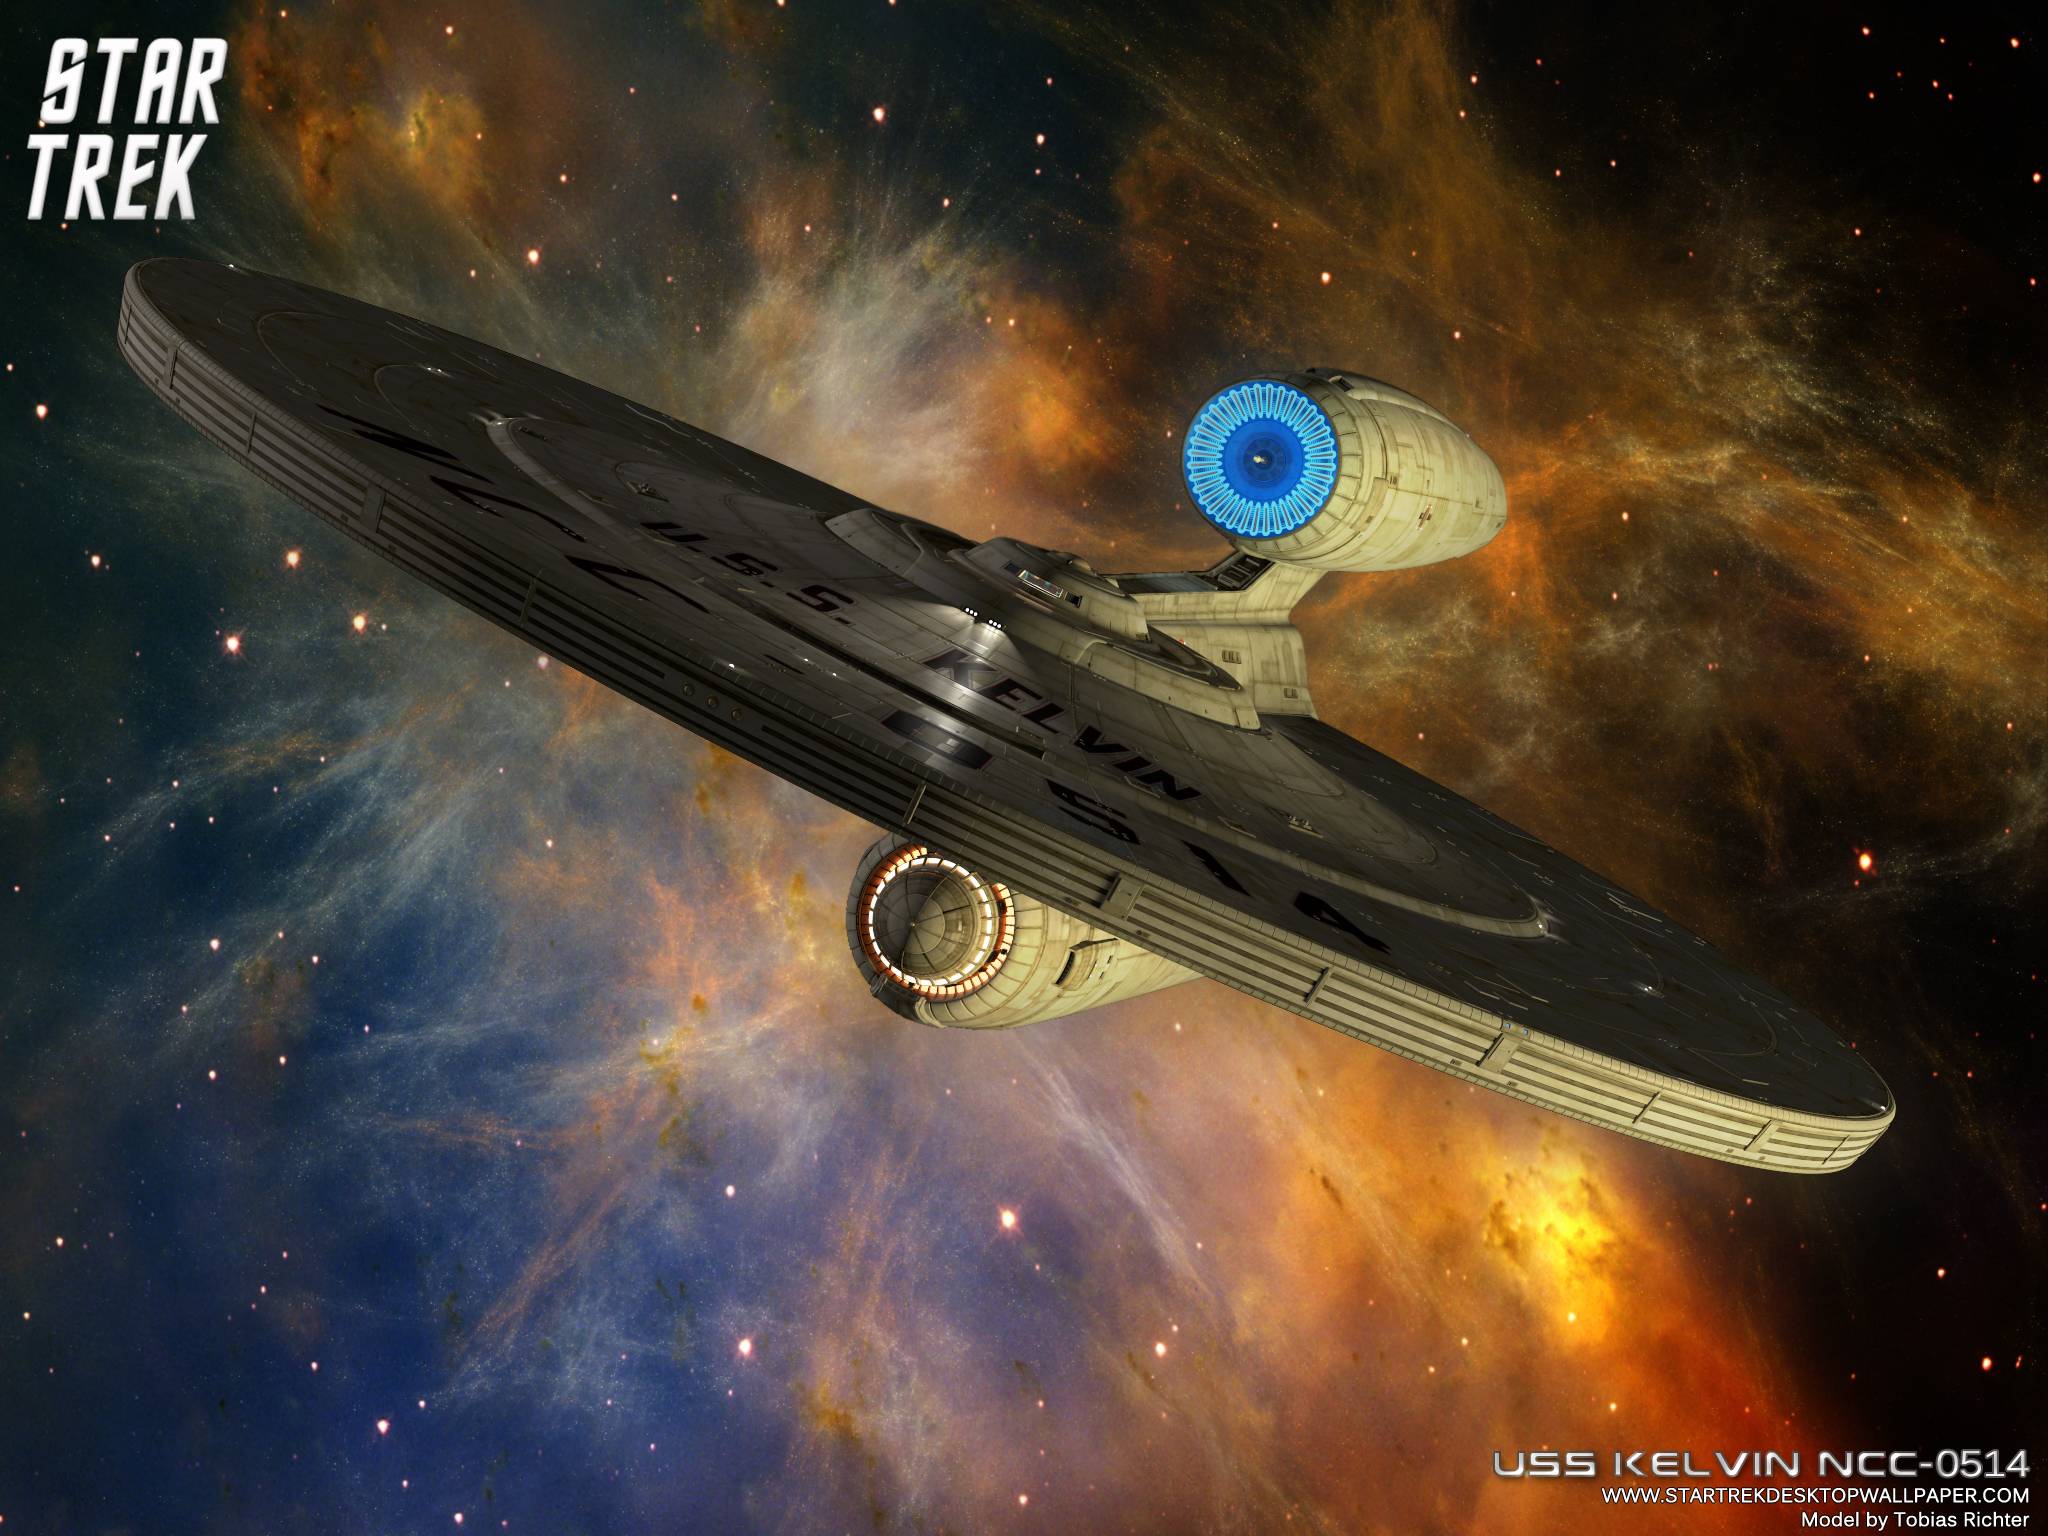 Star Trek Federation Star Ship USS Kelvin NCC 0514, free Star Trek